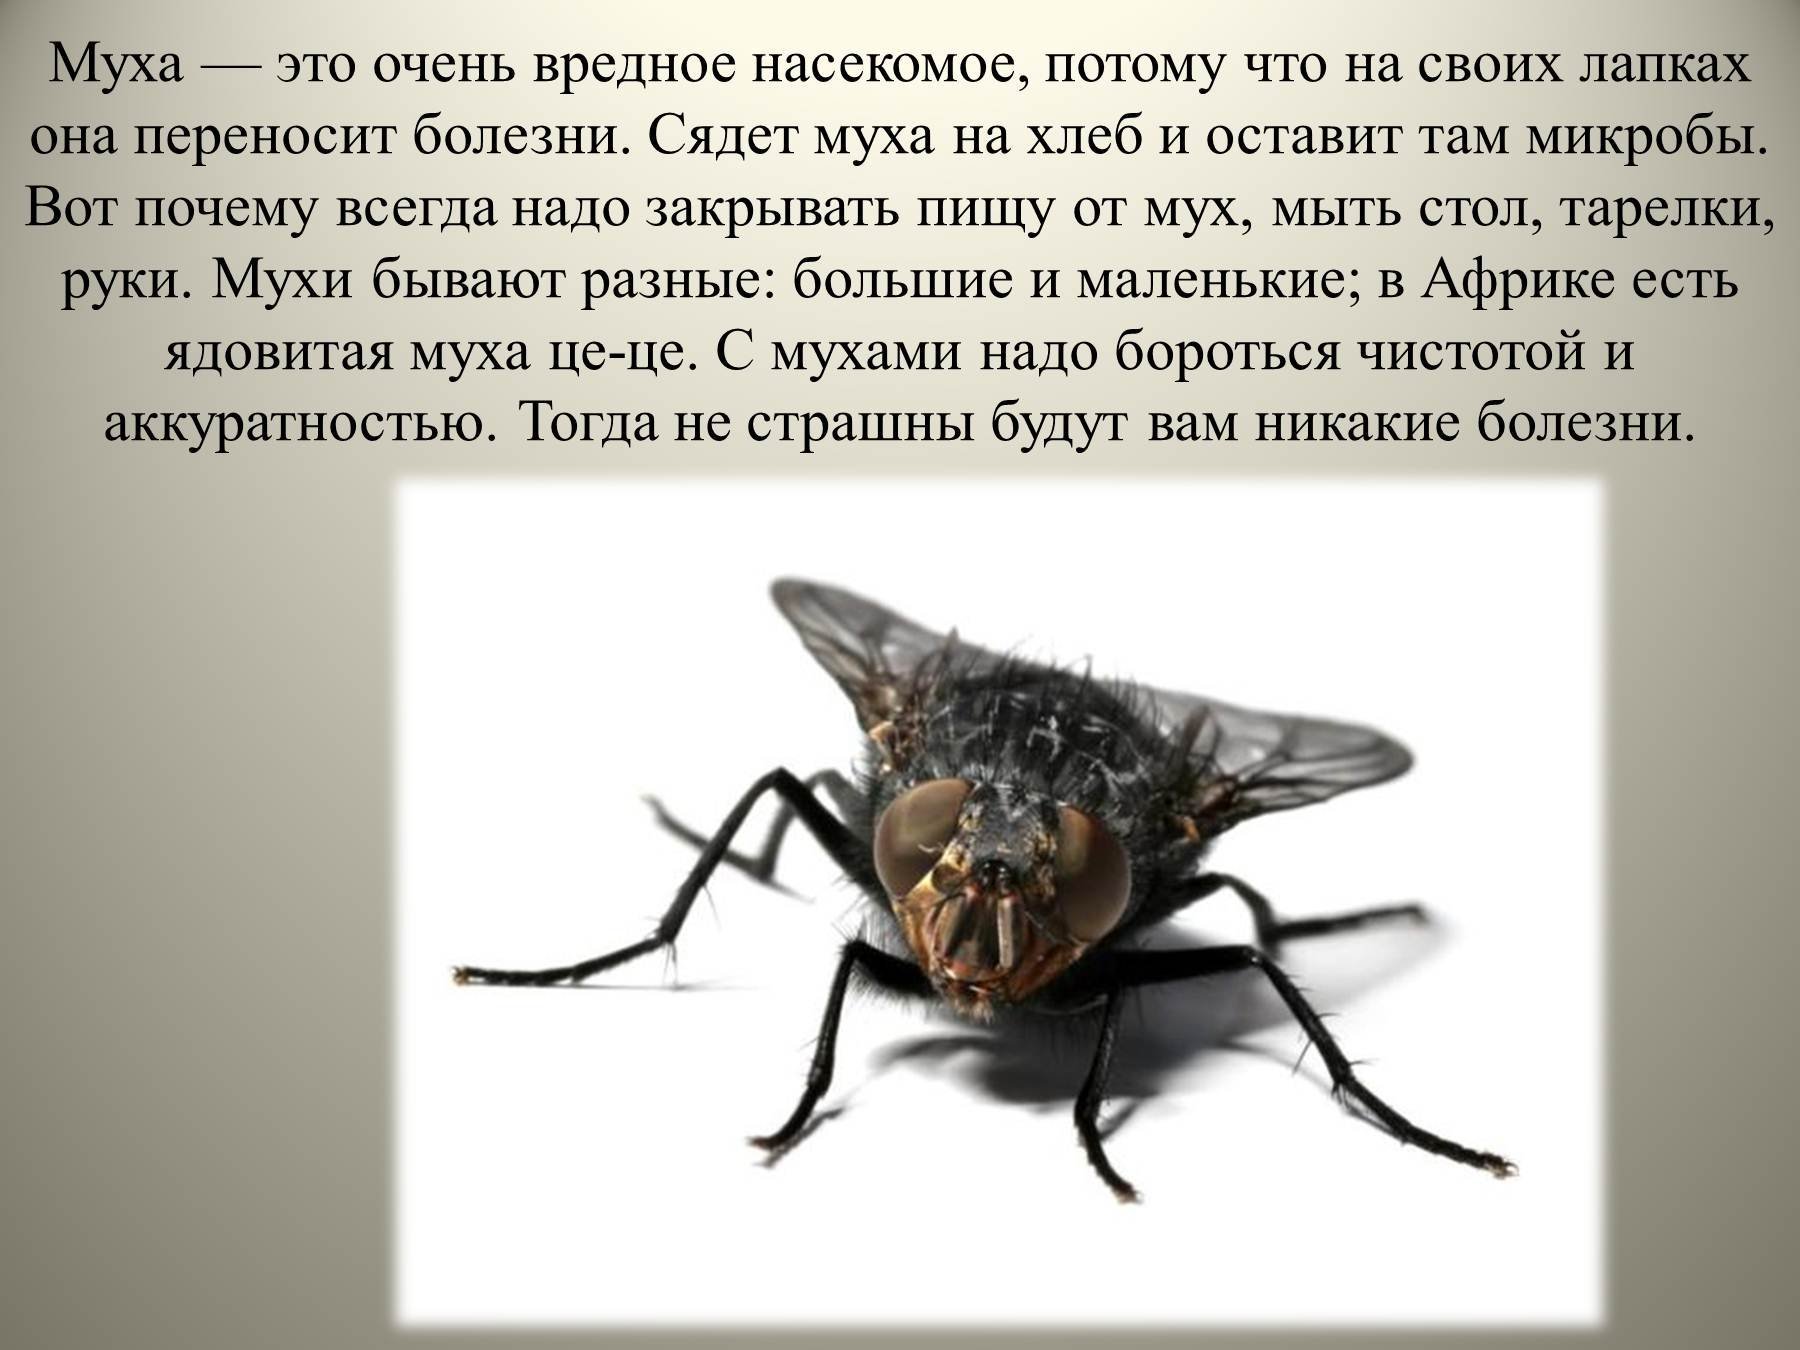 Мухи комары текст. Доклад про мух. Вредные насекомые. Сообщение про муху. Интересные факты о мухах.